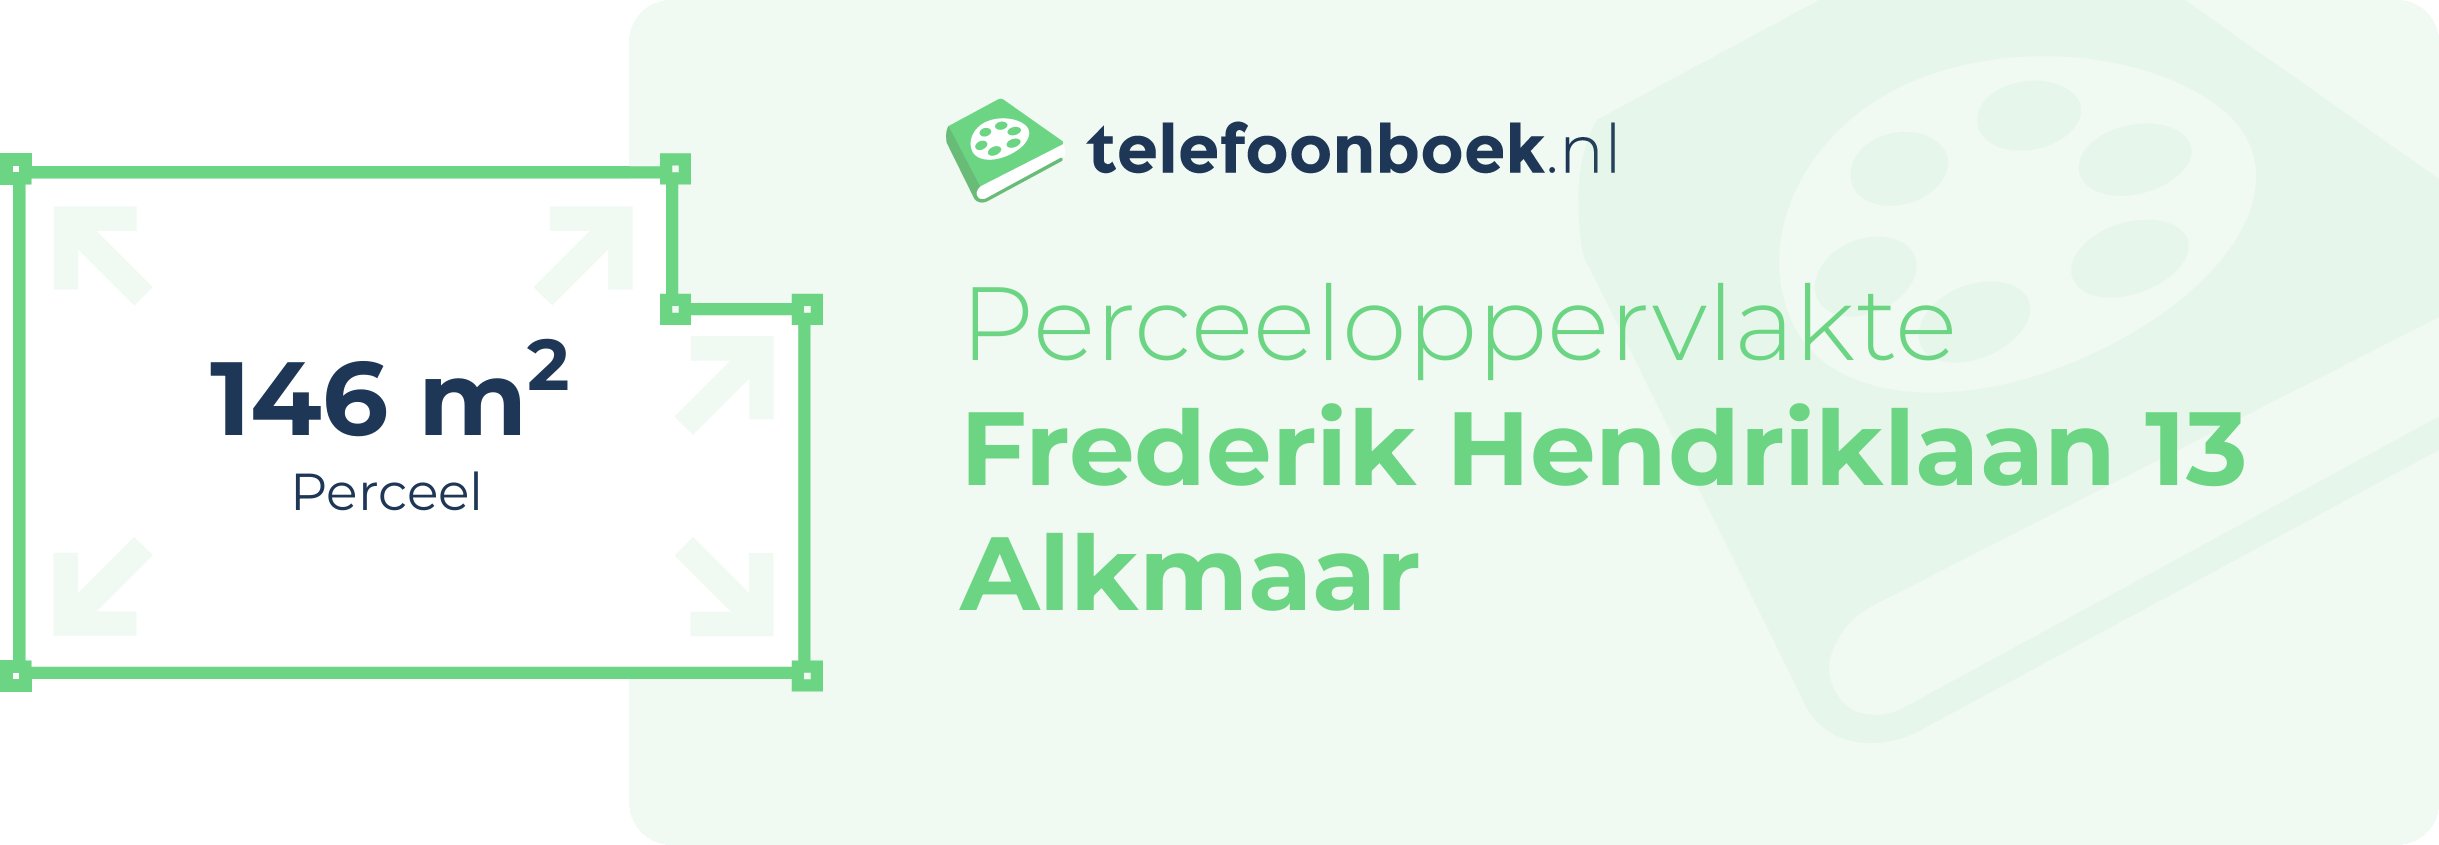 Perceeloppervlakte Frederik Hendriklaan 13 Alkmaar